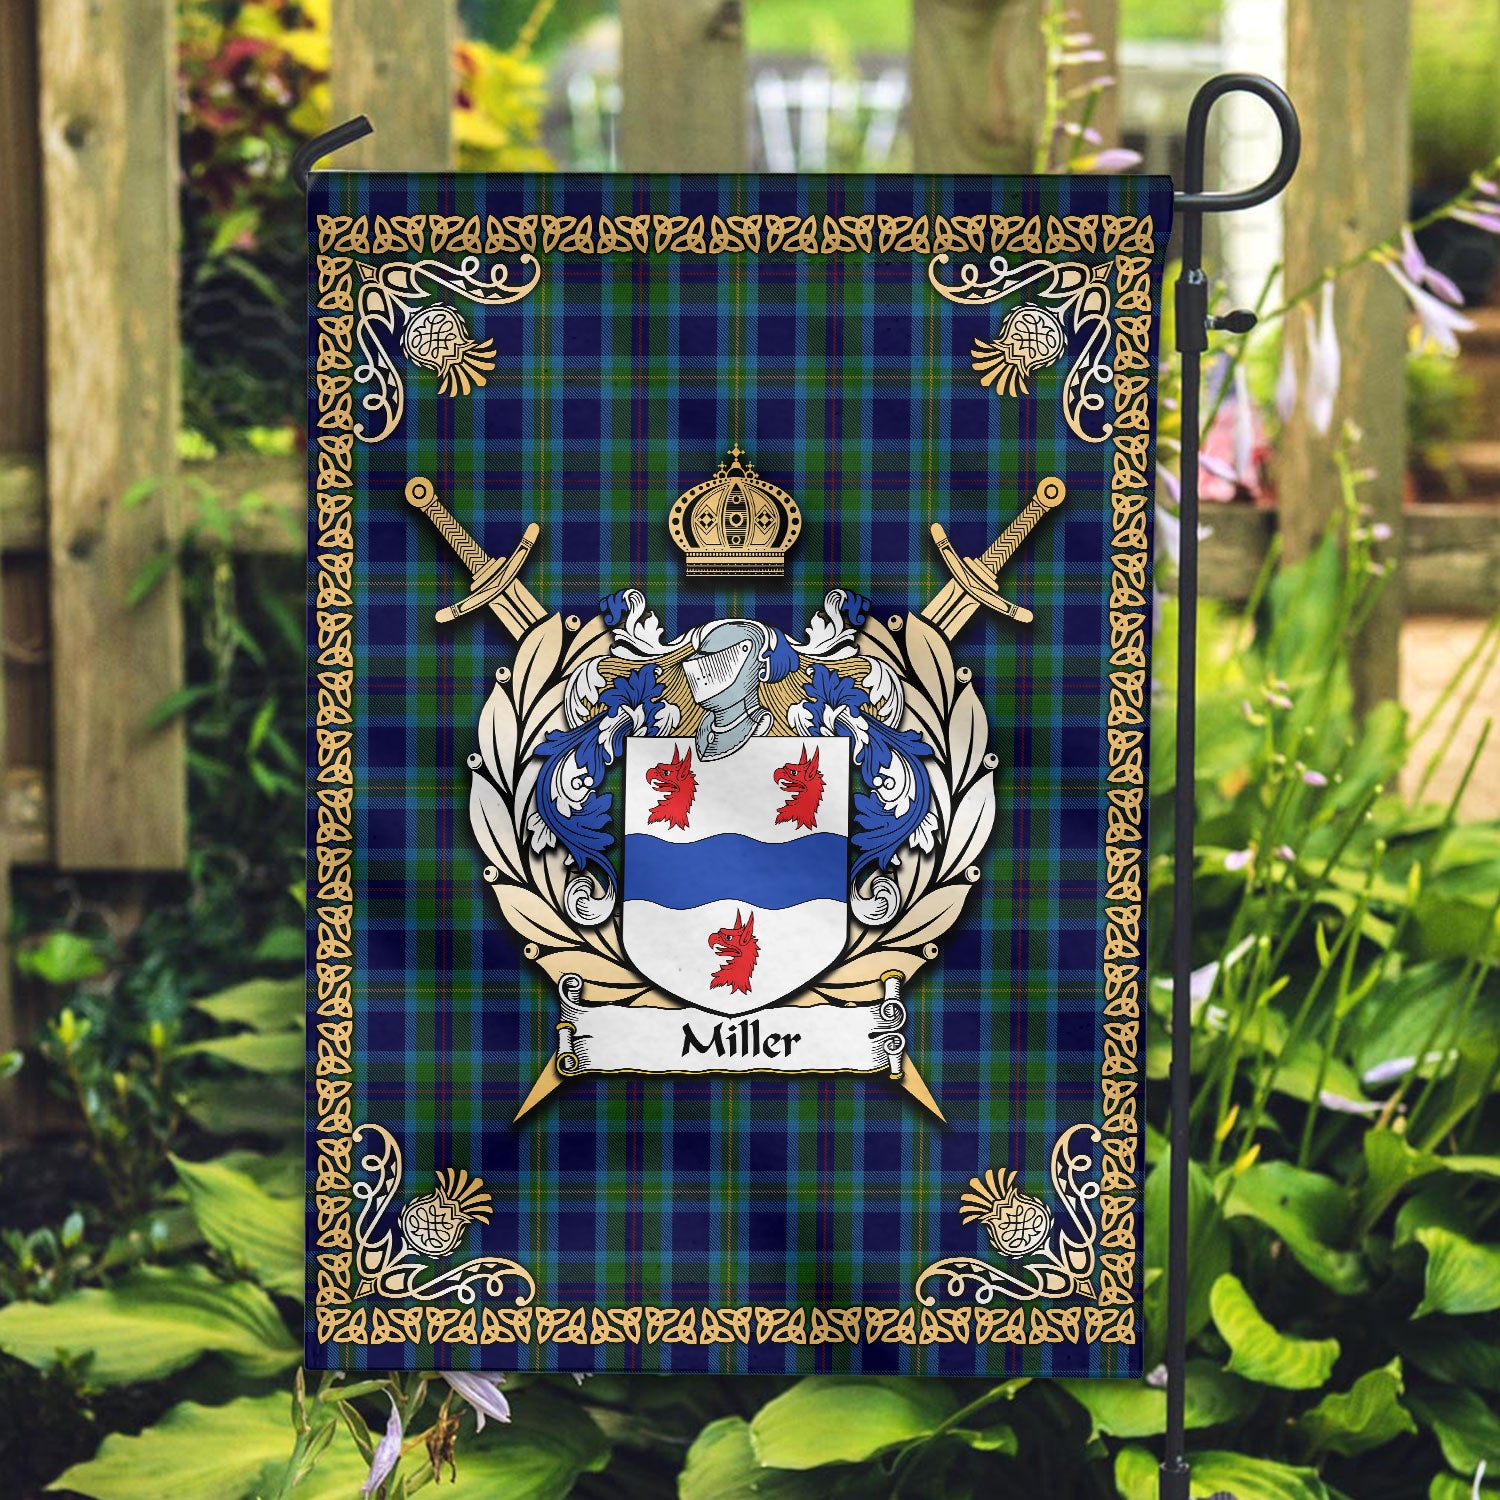 Miller Tartan Crest Garden Flag - Celtic Thistle Style